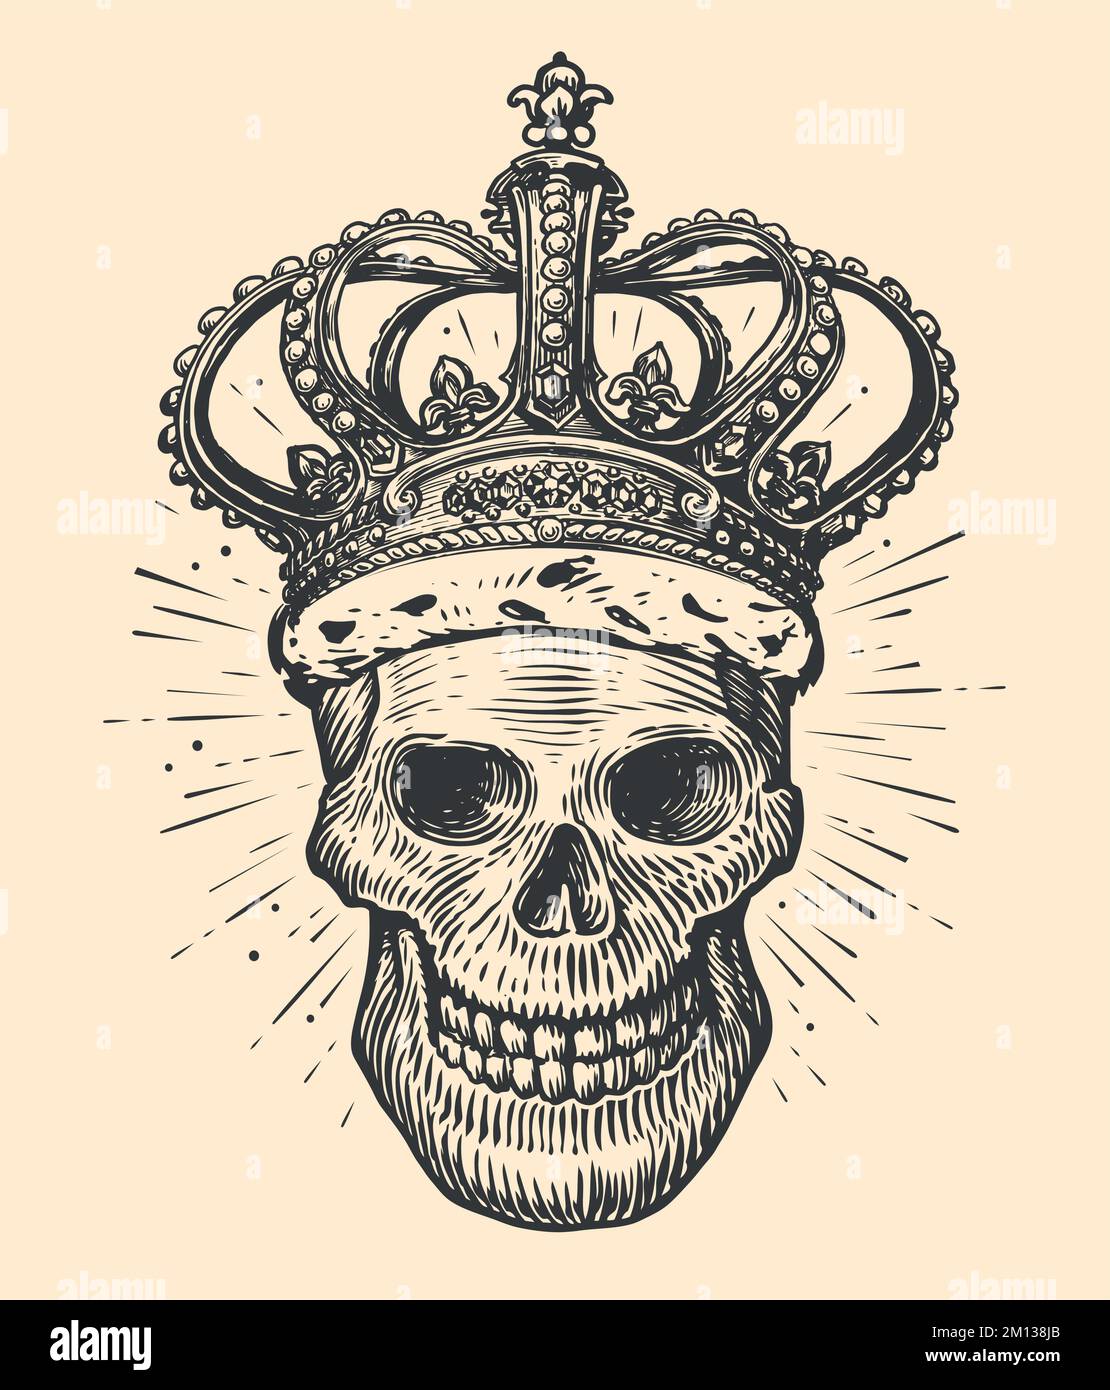 Cranio umano con corona del re. Disegno disegnato a mano in stile vintage. Illustrazione vettoriale del tatuaggio Illustrazione Vettoriale